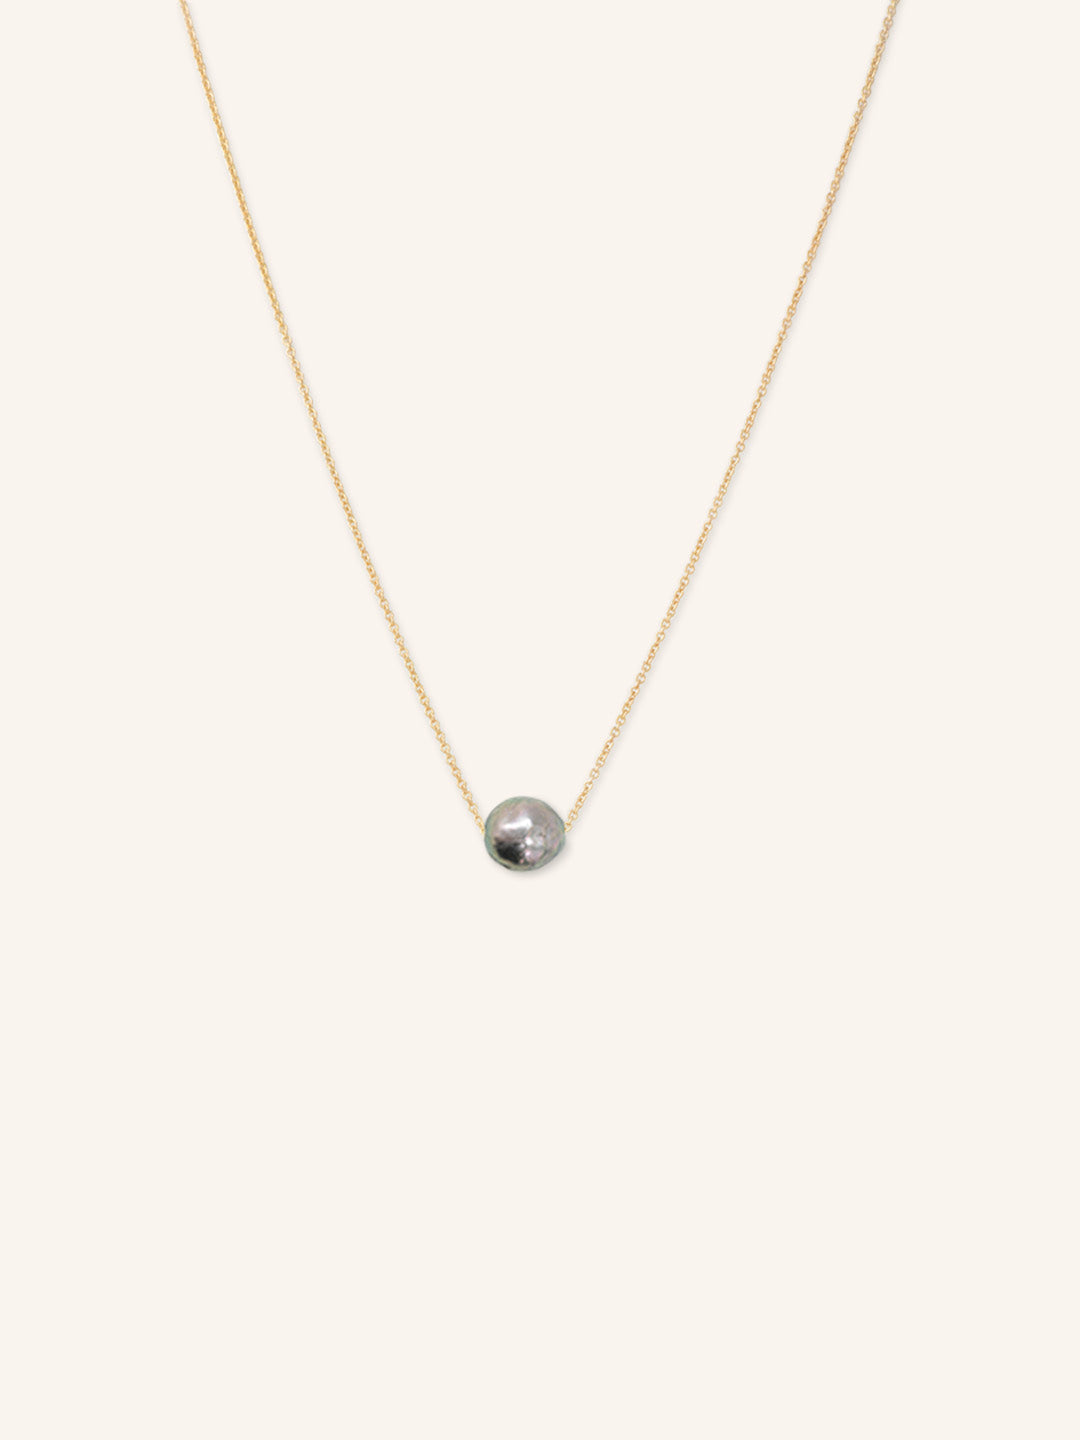 Cozy Nook Black Pearl Necklace